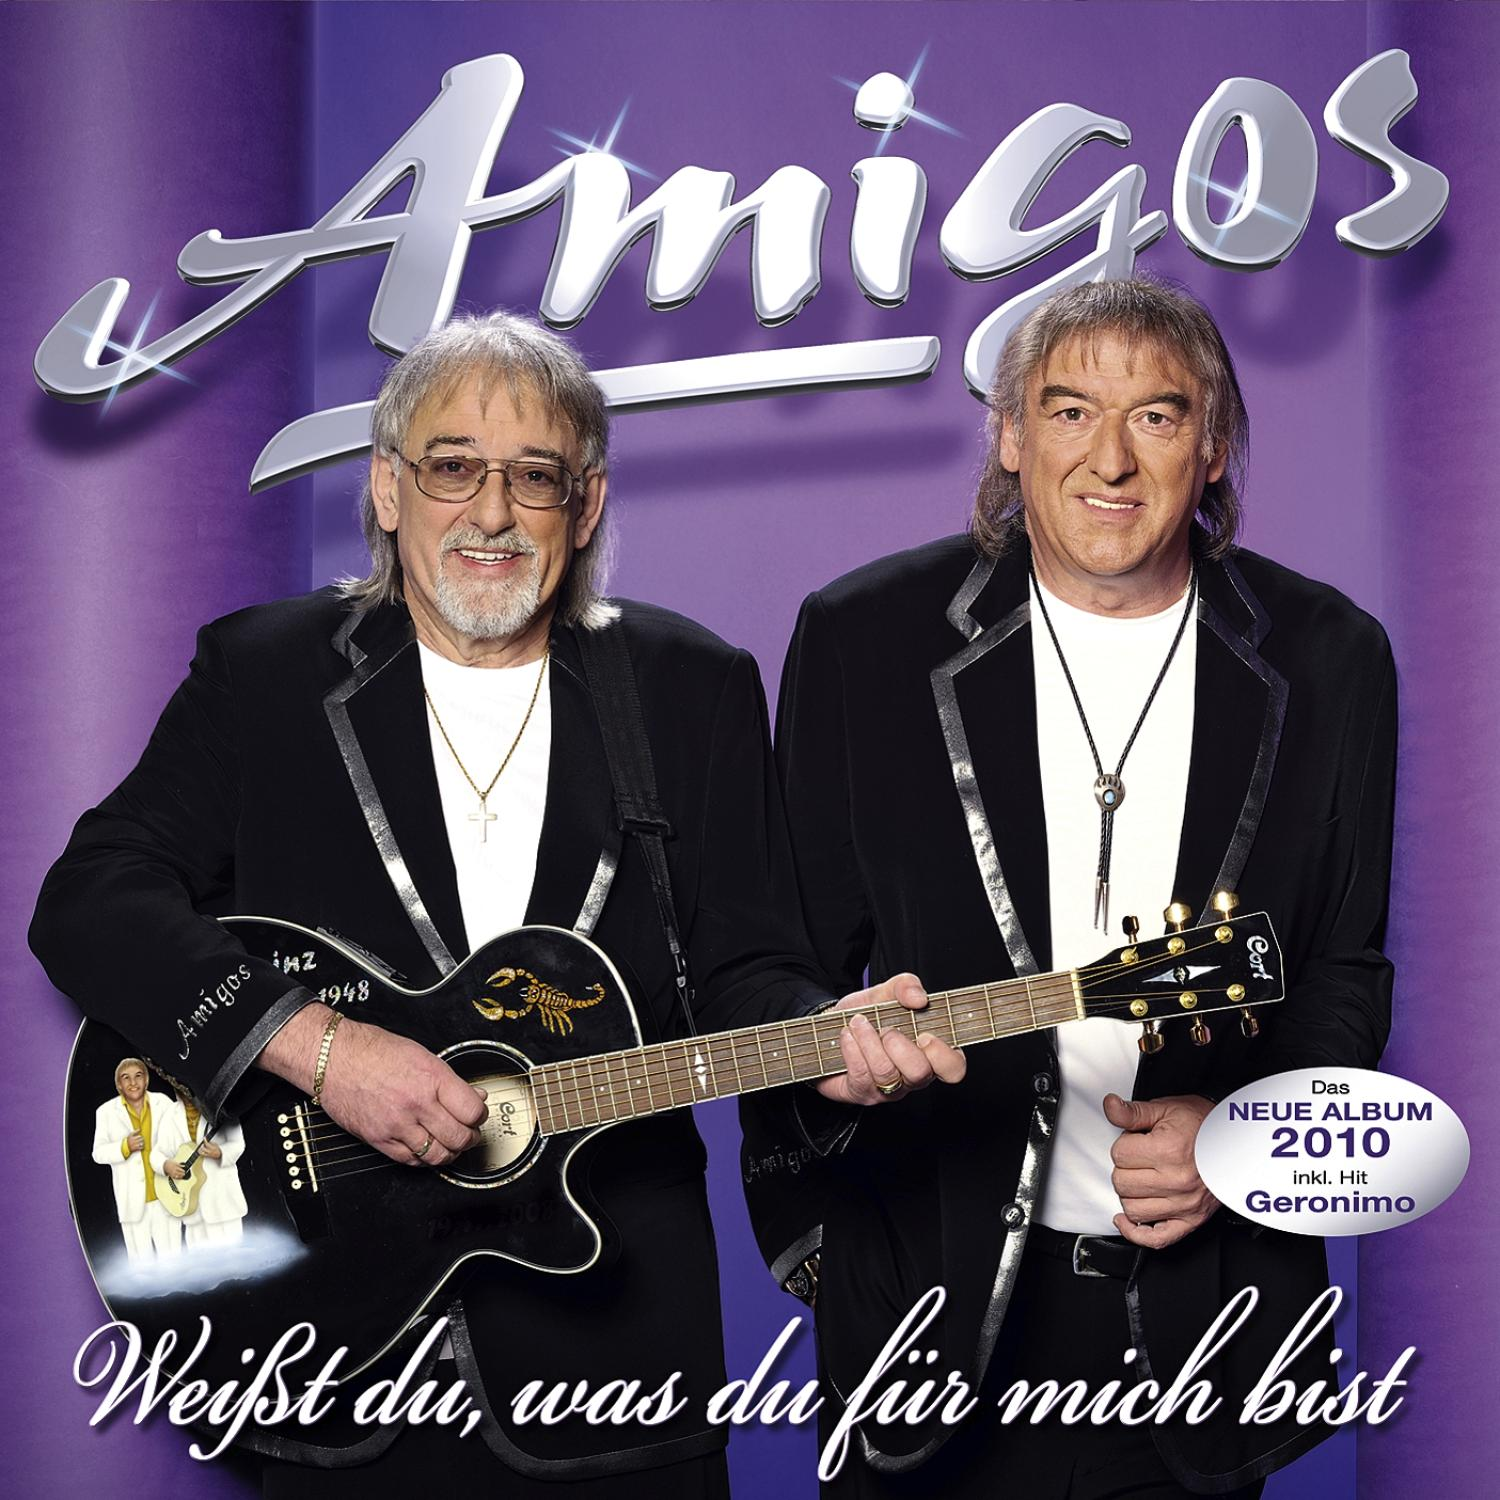 Du, Amigos (CD) Weißt Die Für Bist - Du Mich Was -